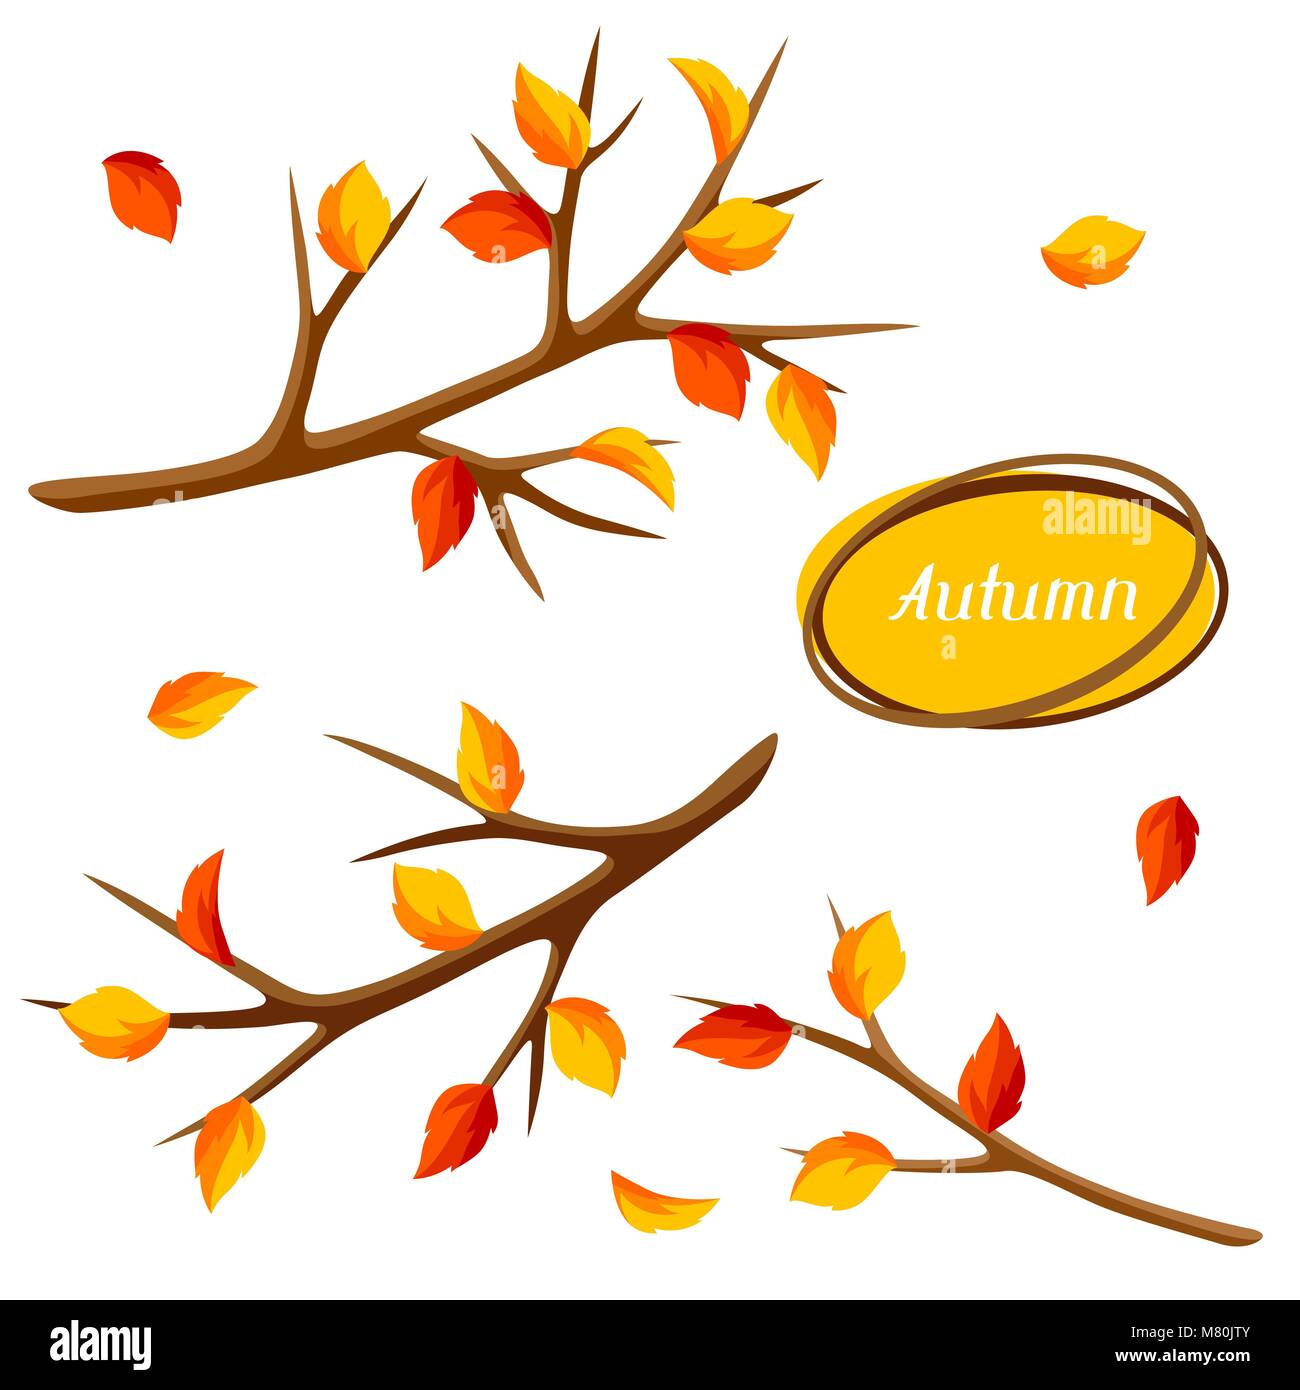 Jeu de l'automne avec des branches d'arbre et des feuilles jaunes. Illustration de saison Illustration de Vecteur